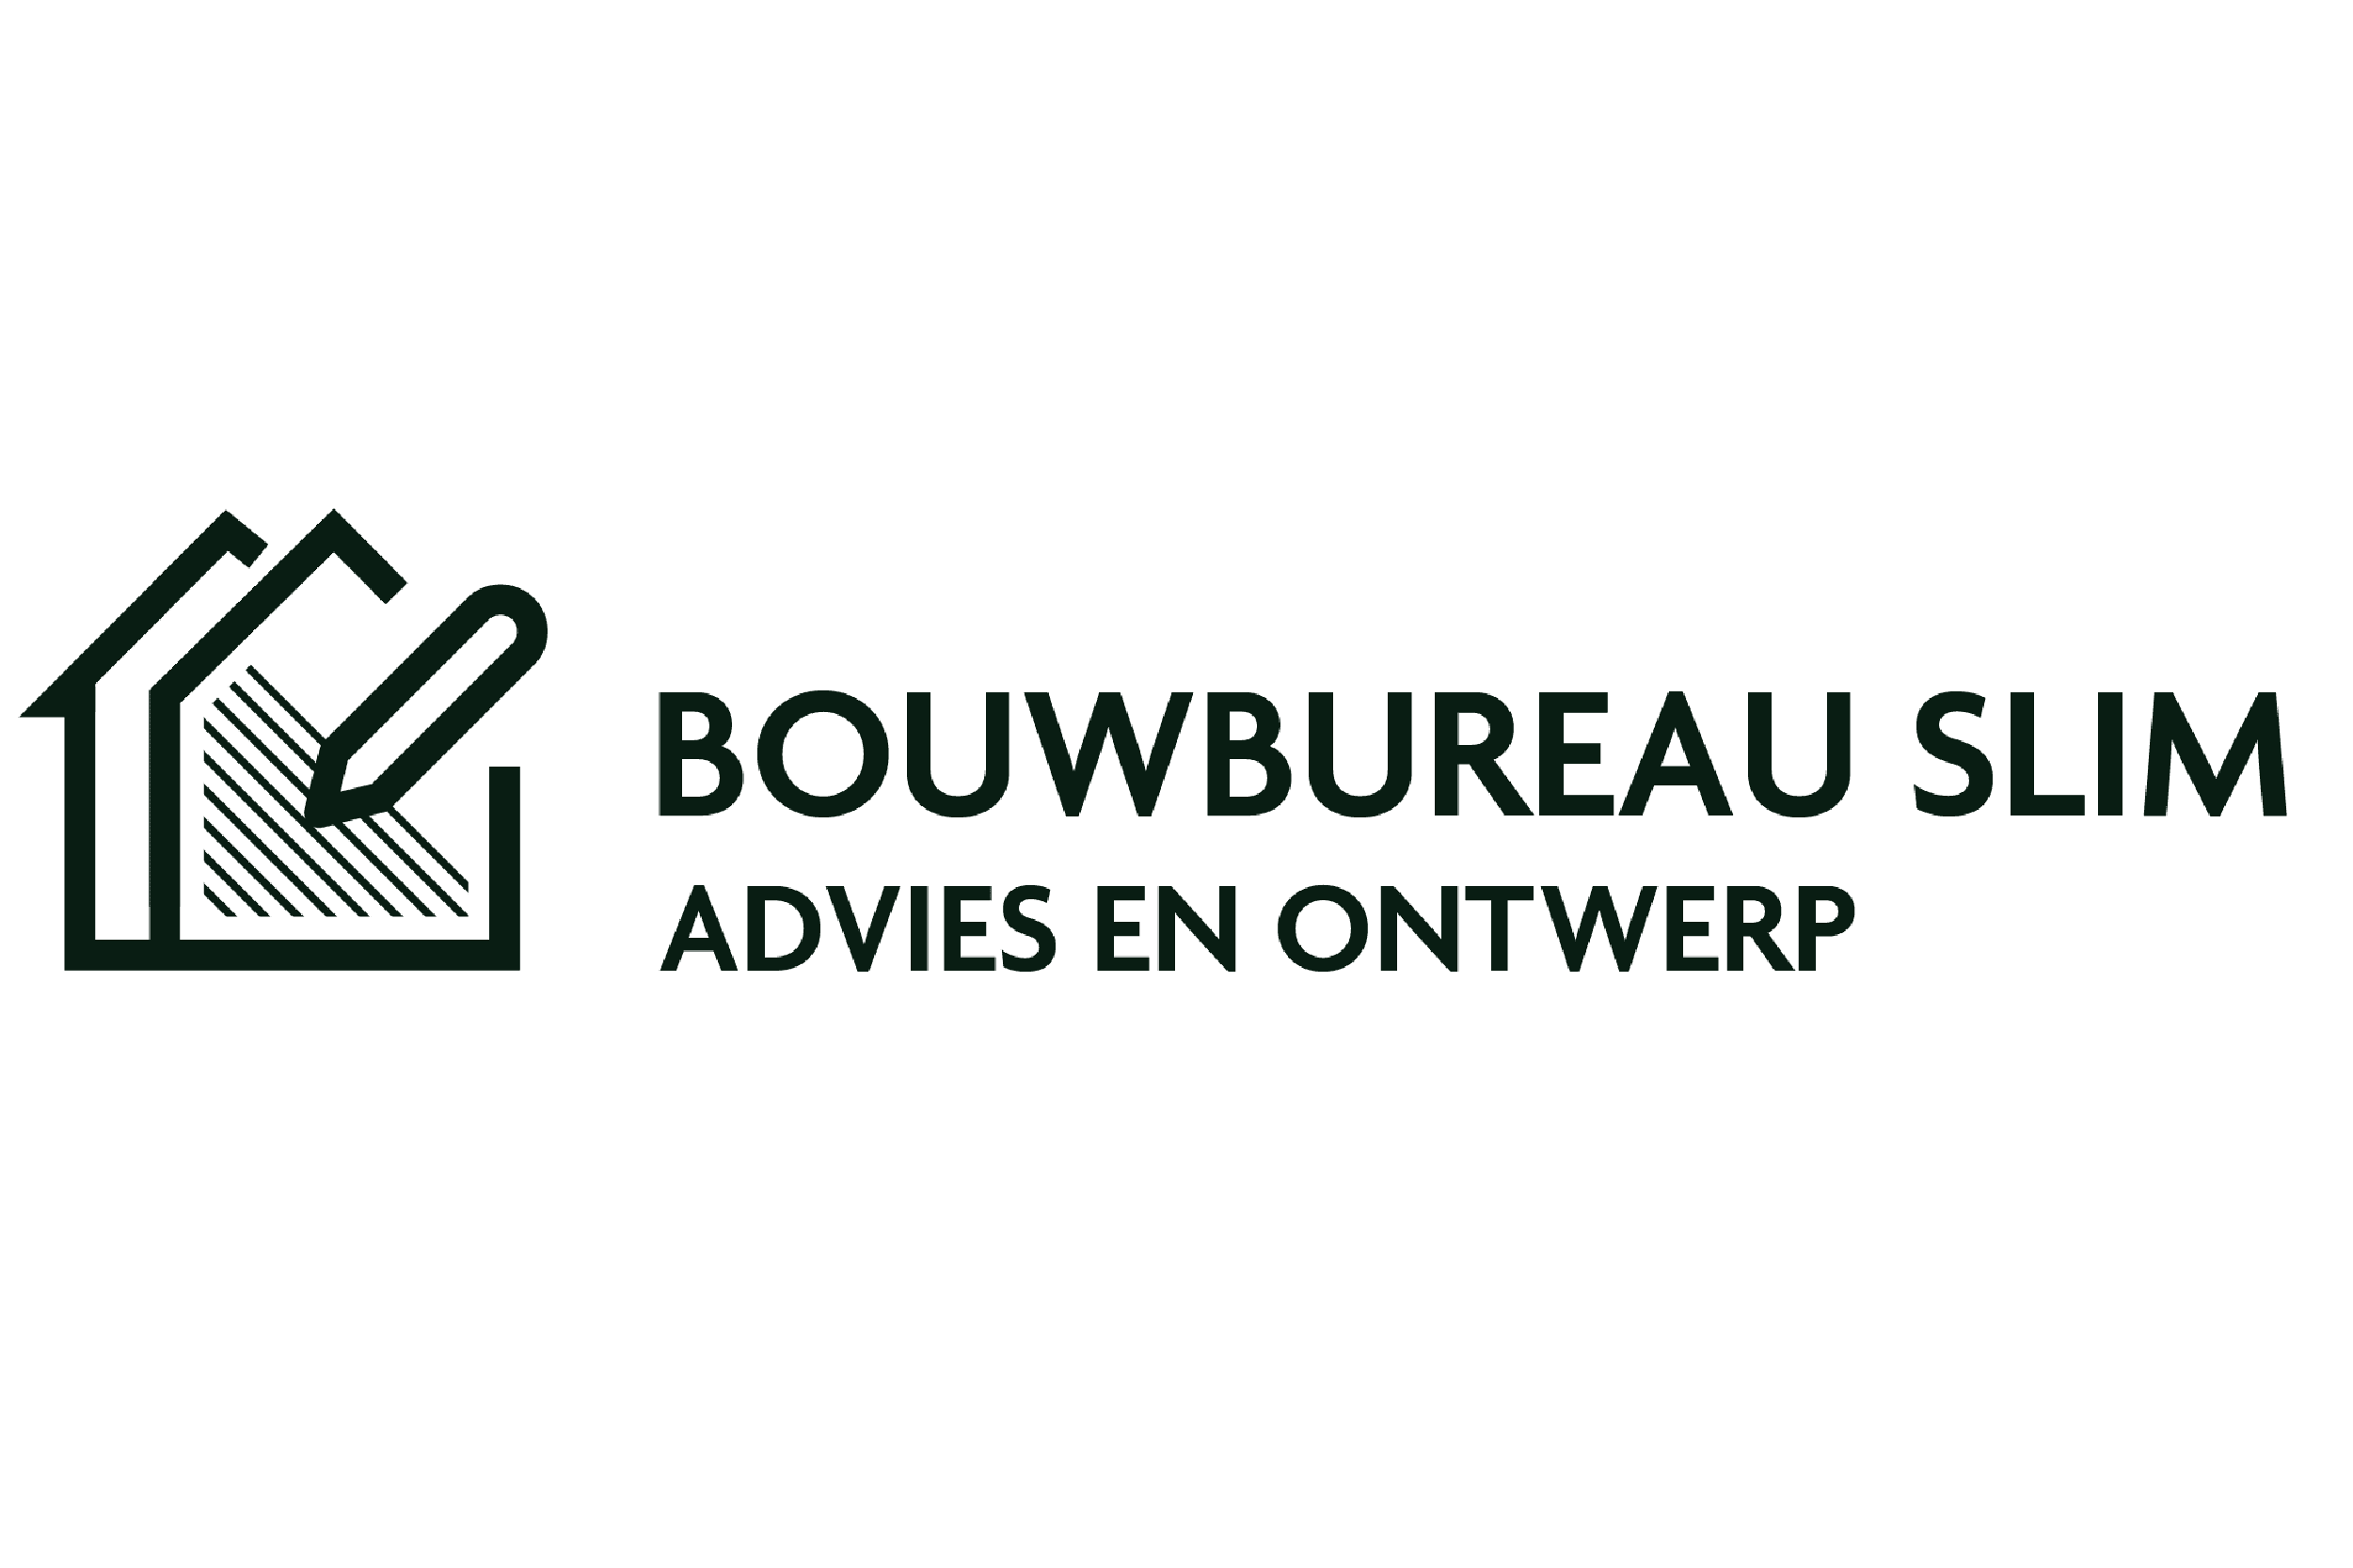 Het logo van Bouwbureau slim